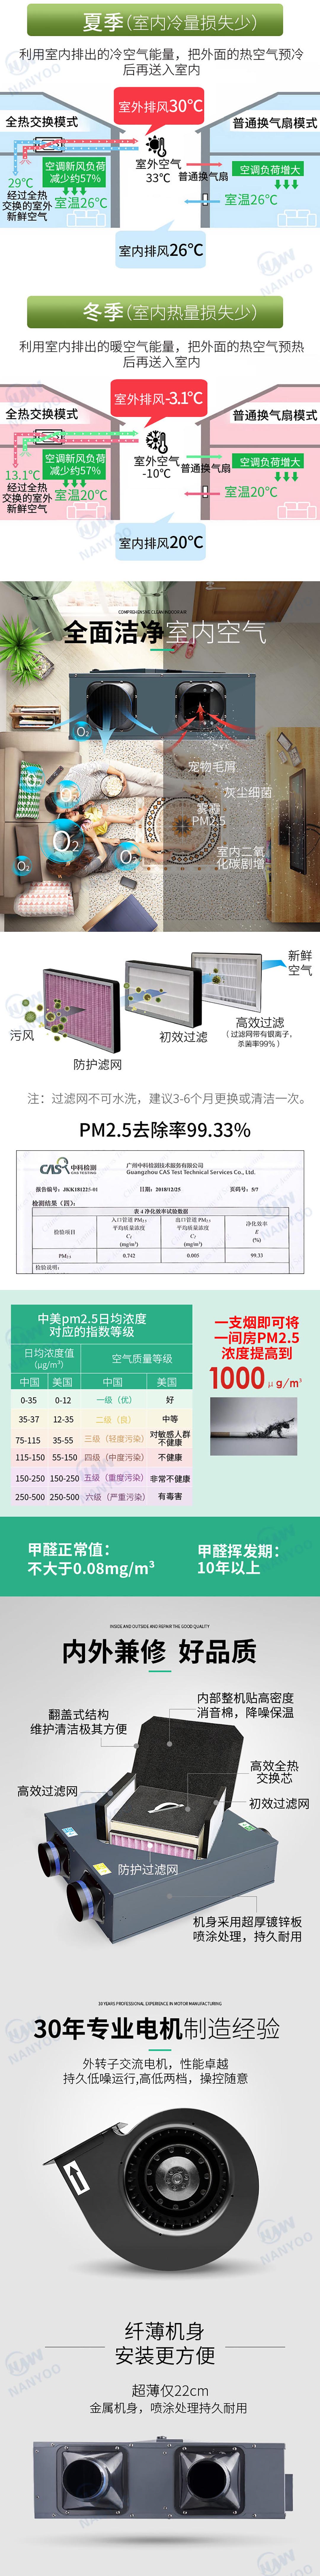 超薄除PM2.5全热新风交换机-2.jpg